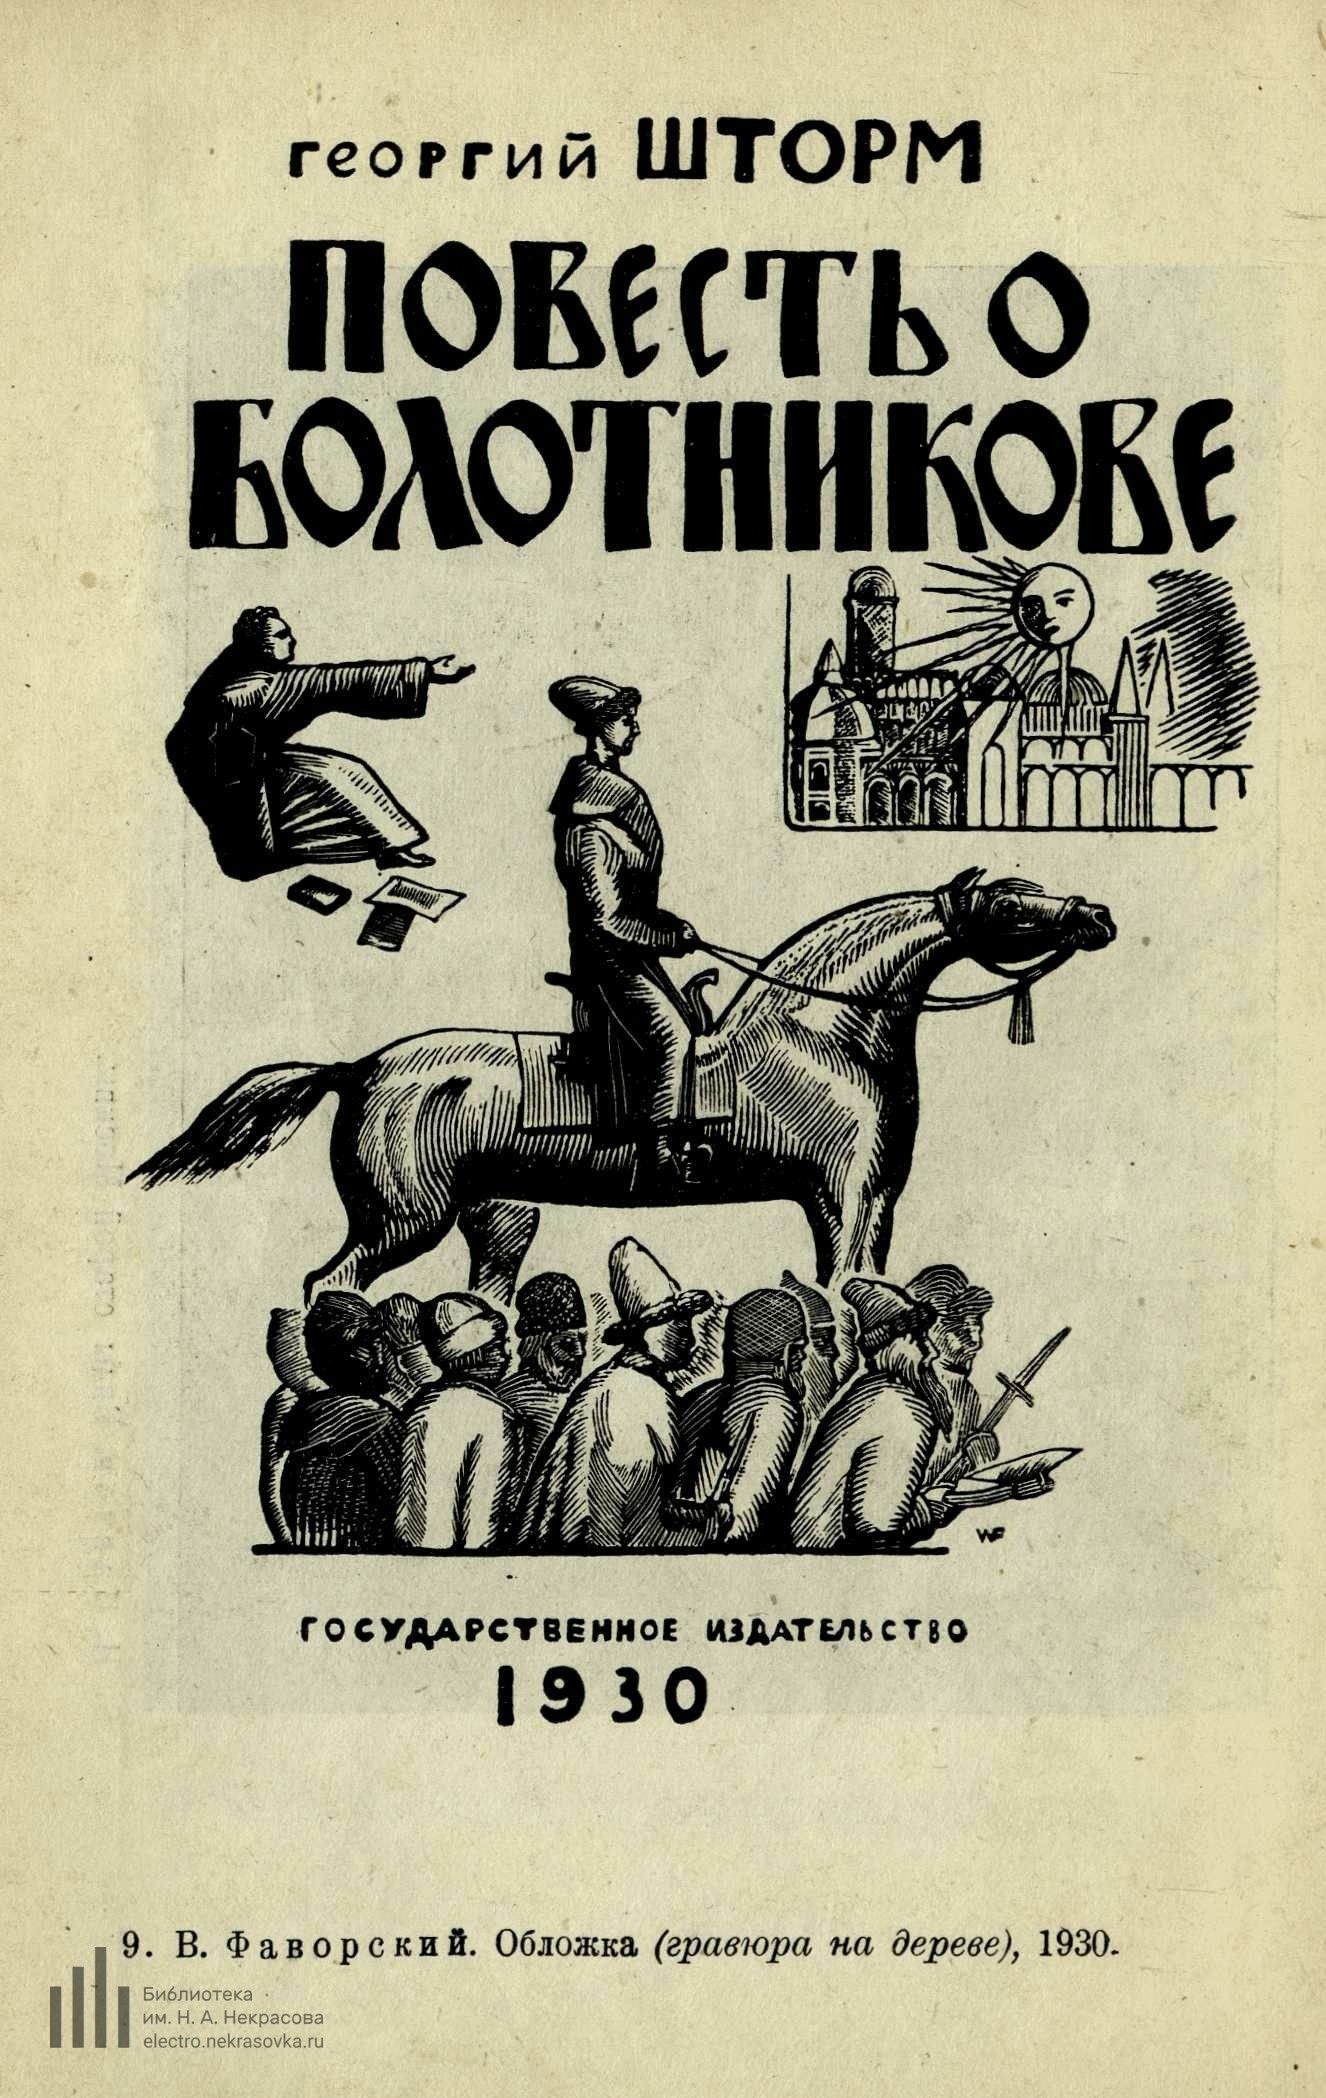 В. Фаворский. Обложка (гравюра на дереве), 1930.